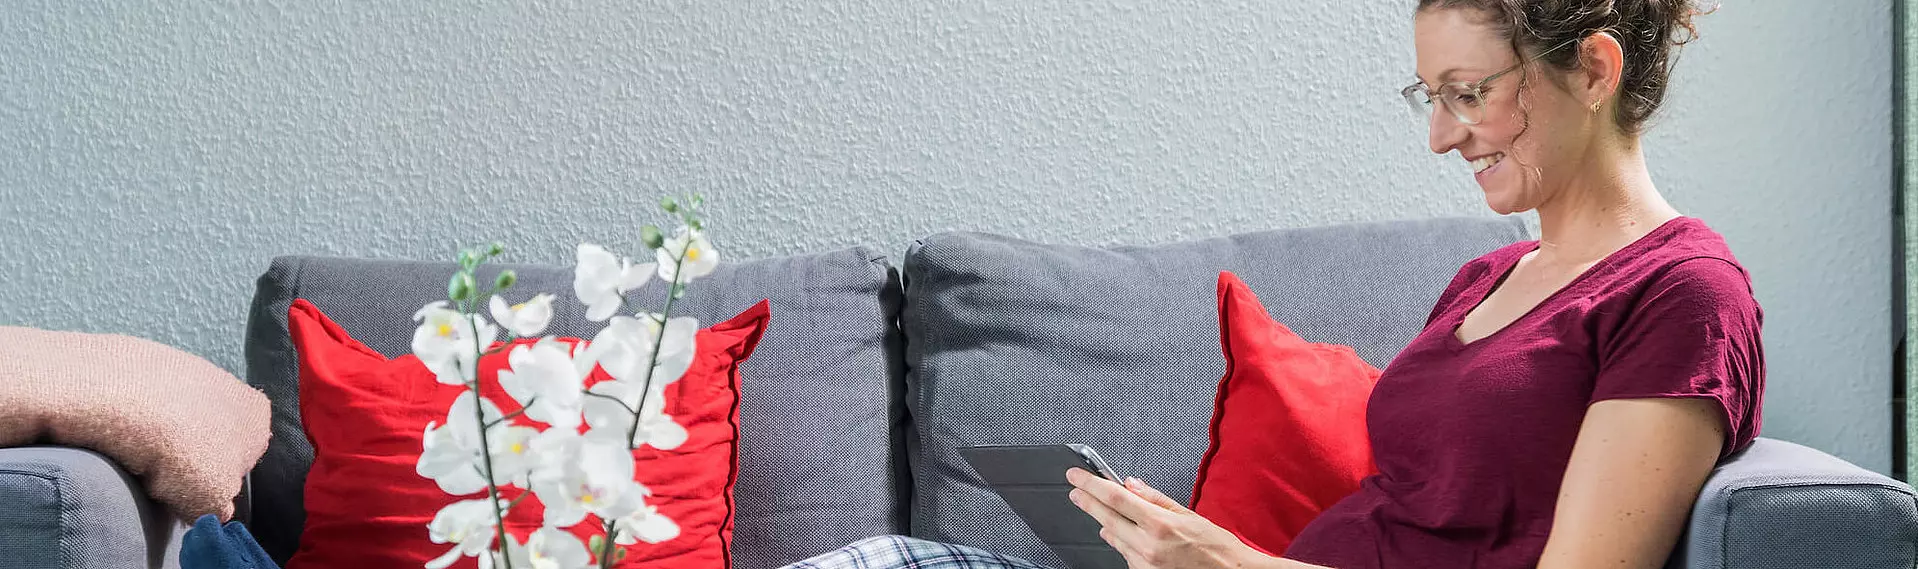 Frau mit Brille und rotem Shirt auf grauer Couch lächelnd mit Tablet in den Händen